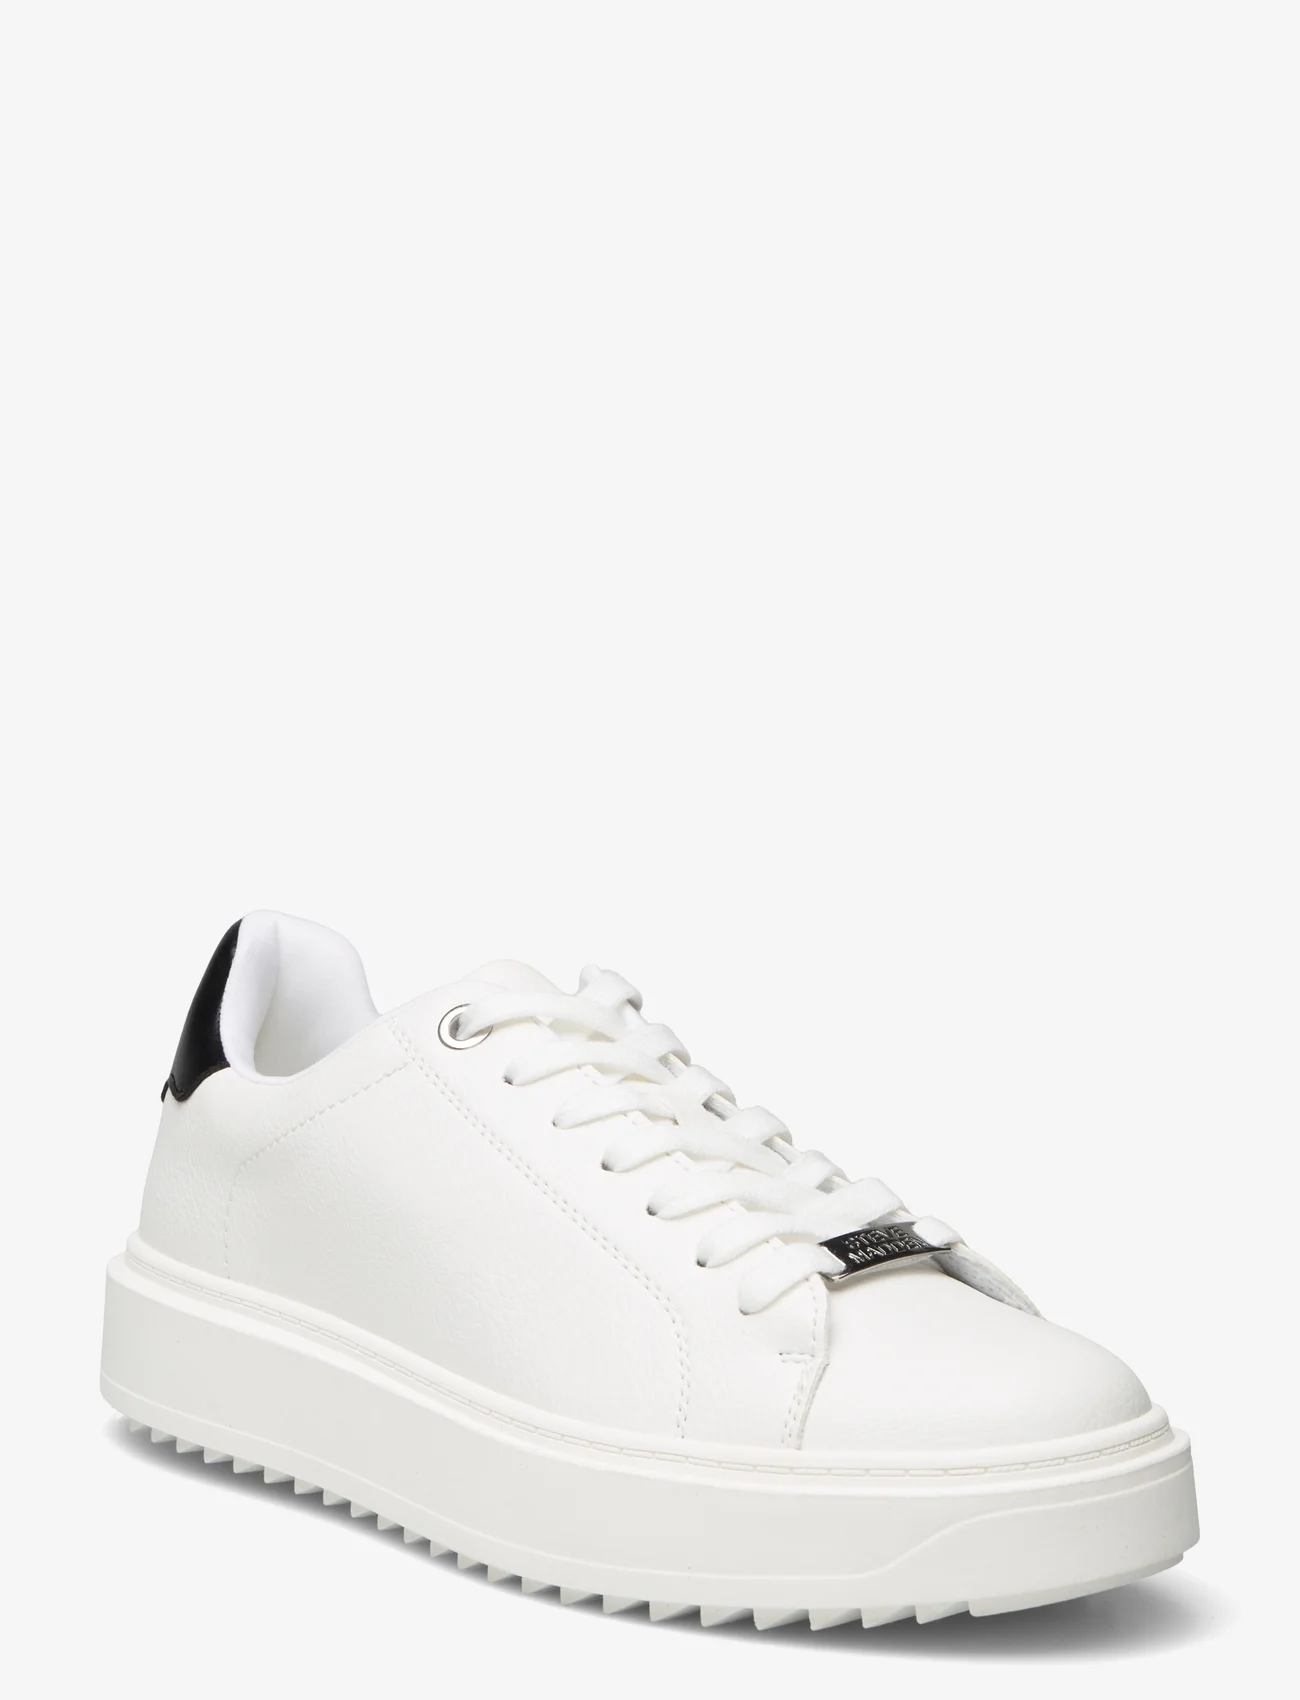 Steve Madden - Catcher Sneaker - sneakers med lavt skaft - white/black - 0